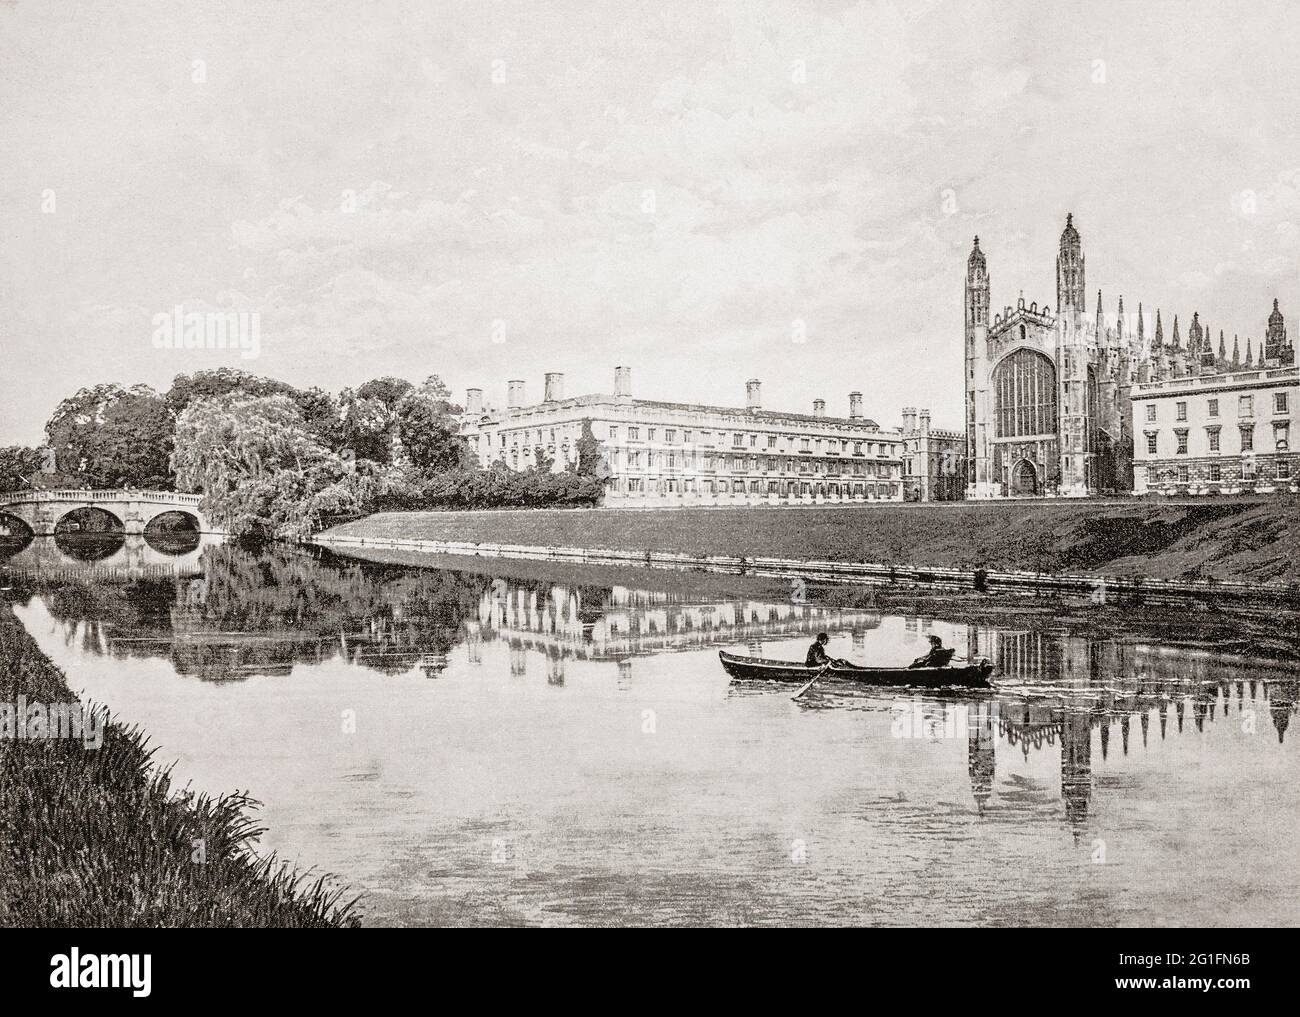 Una vista del tardo 19 ° secolo di una barca a remi sul fiume Cam come passa King's College e Chapel, un collegio costituente della University of Cambridge a Cambridge, Inghilterra. Foto Stock